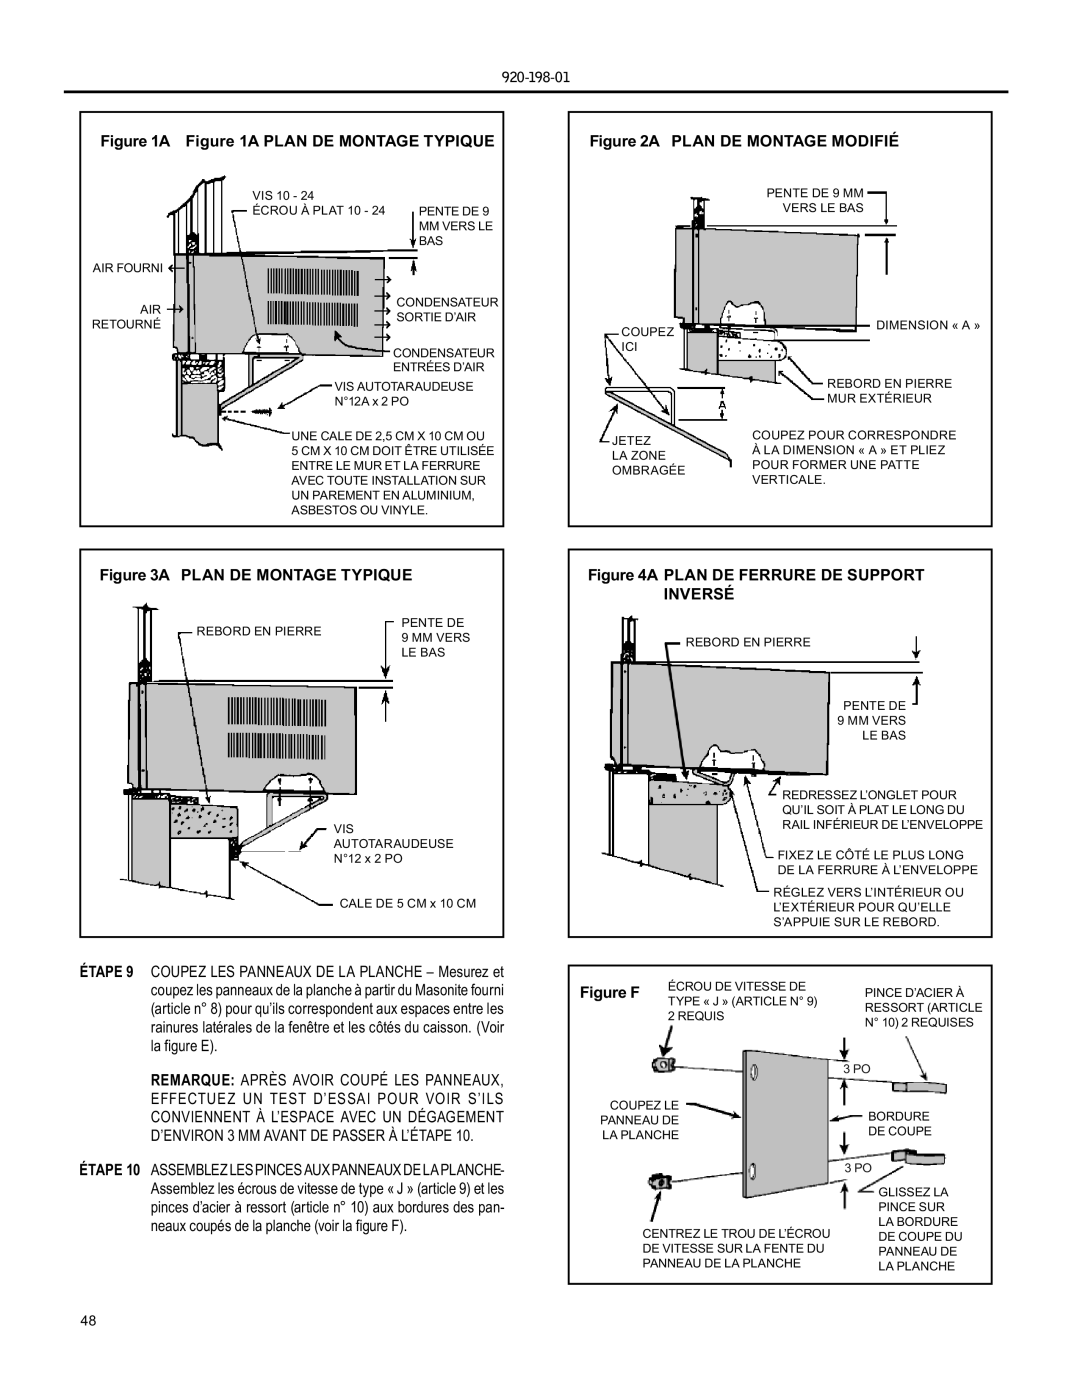 Friedrich YS09 A A Plan De Montage Typique, A Plan De Montage Modifié, A Plan De Ferrure De Support Inversé, Figure F 